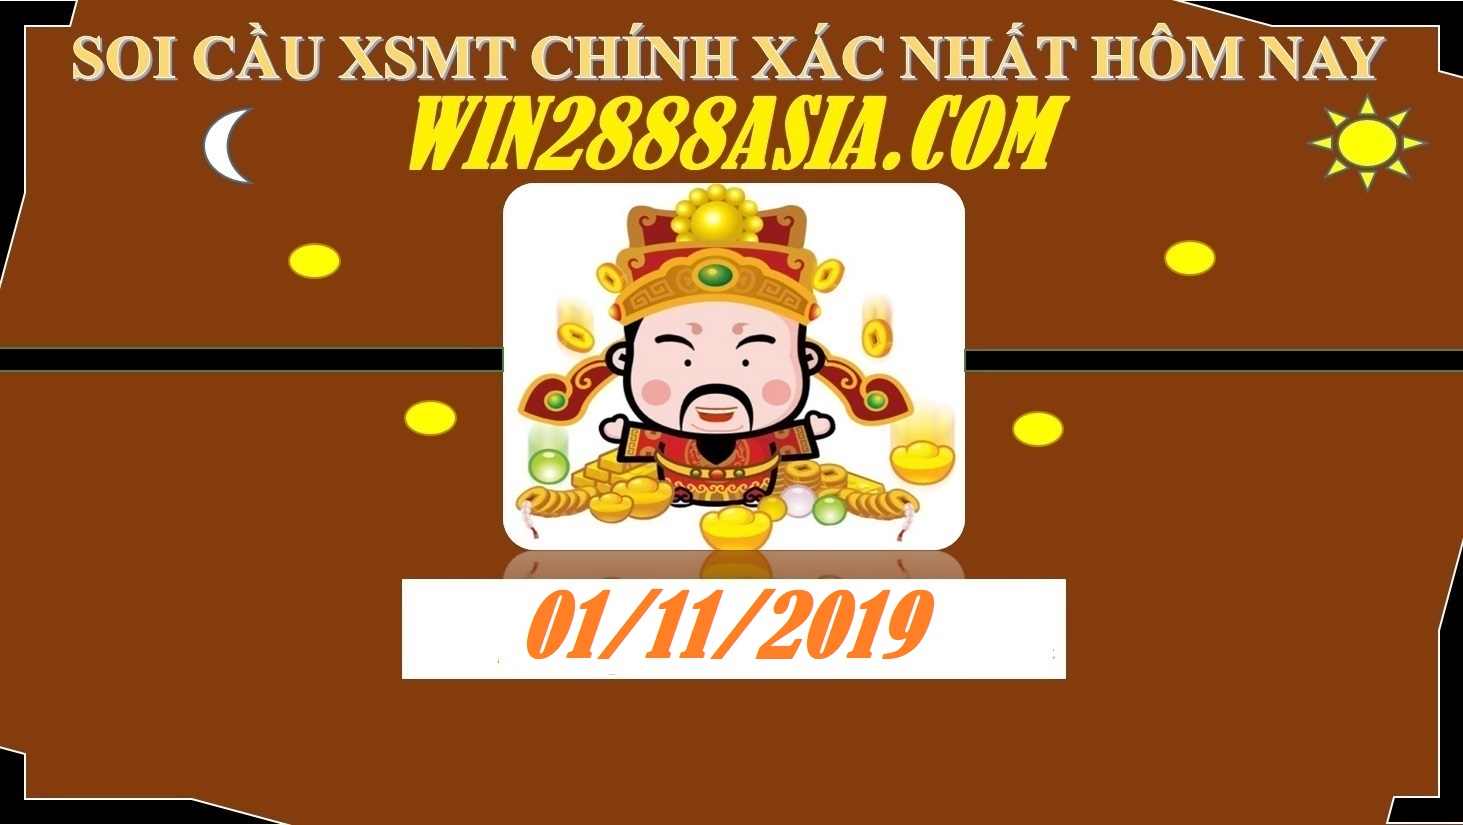 Soi cầu XSMT 1-11-2019 Win2888